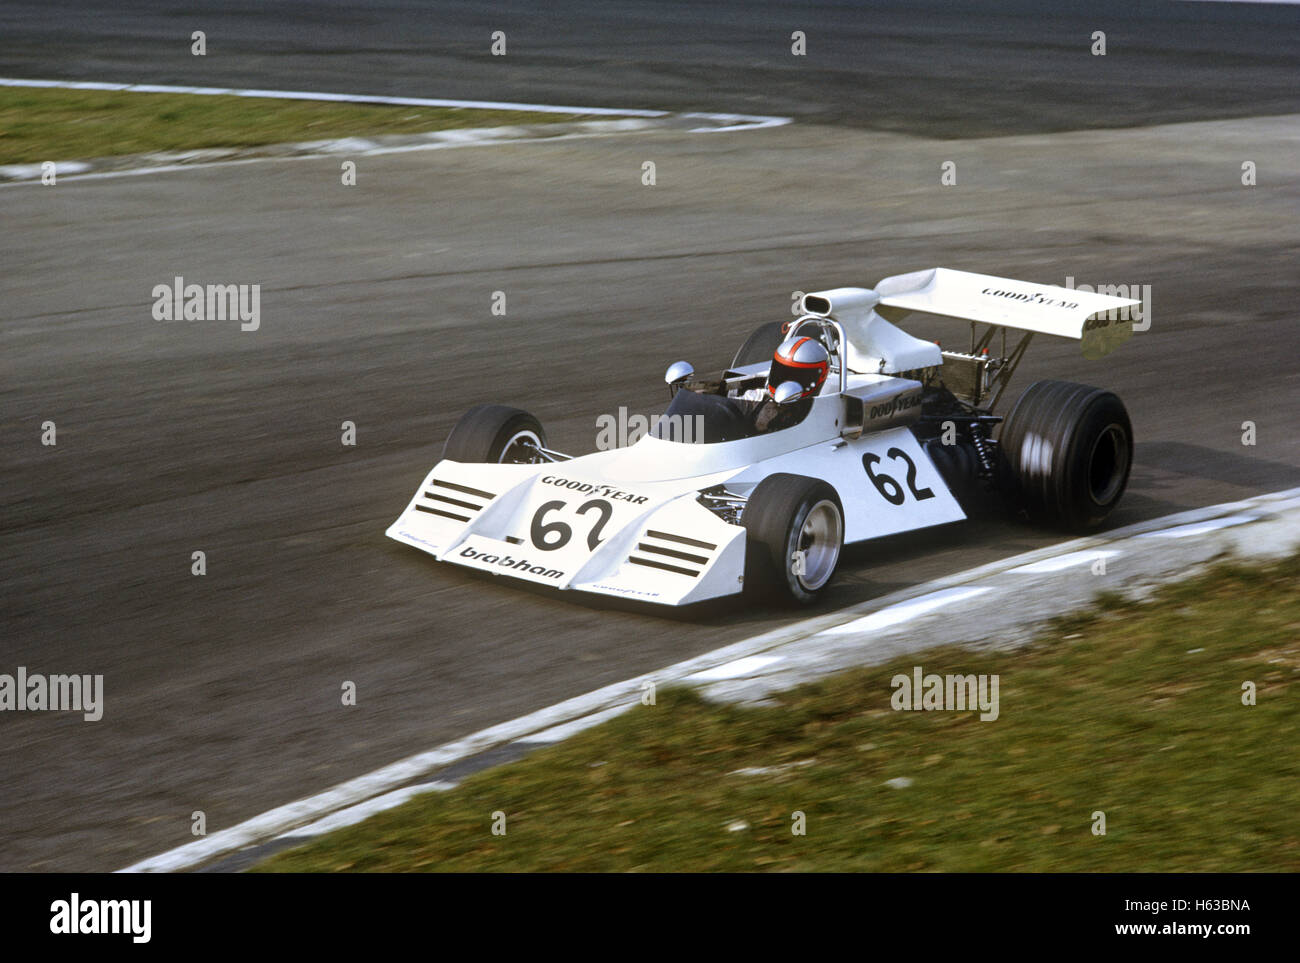 John Watson dans sa Brabham dans la Course des Champions de Brands Hatch, UK 1974 Banque D'Images